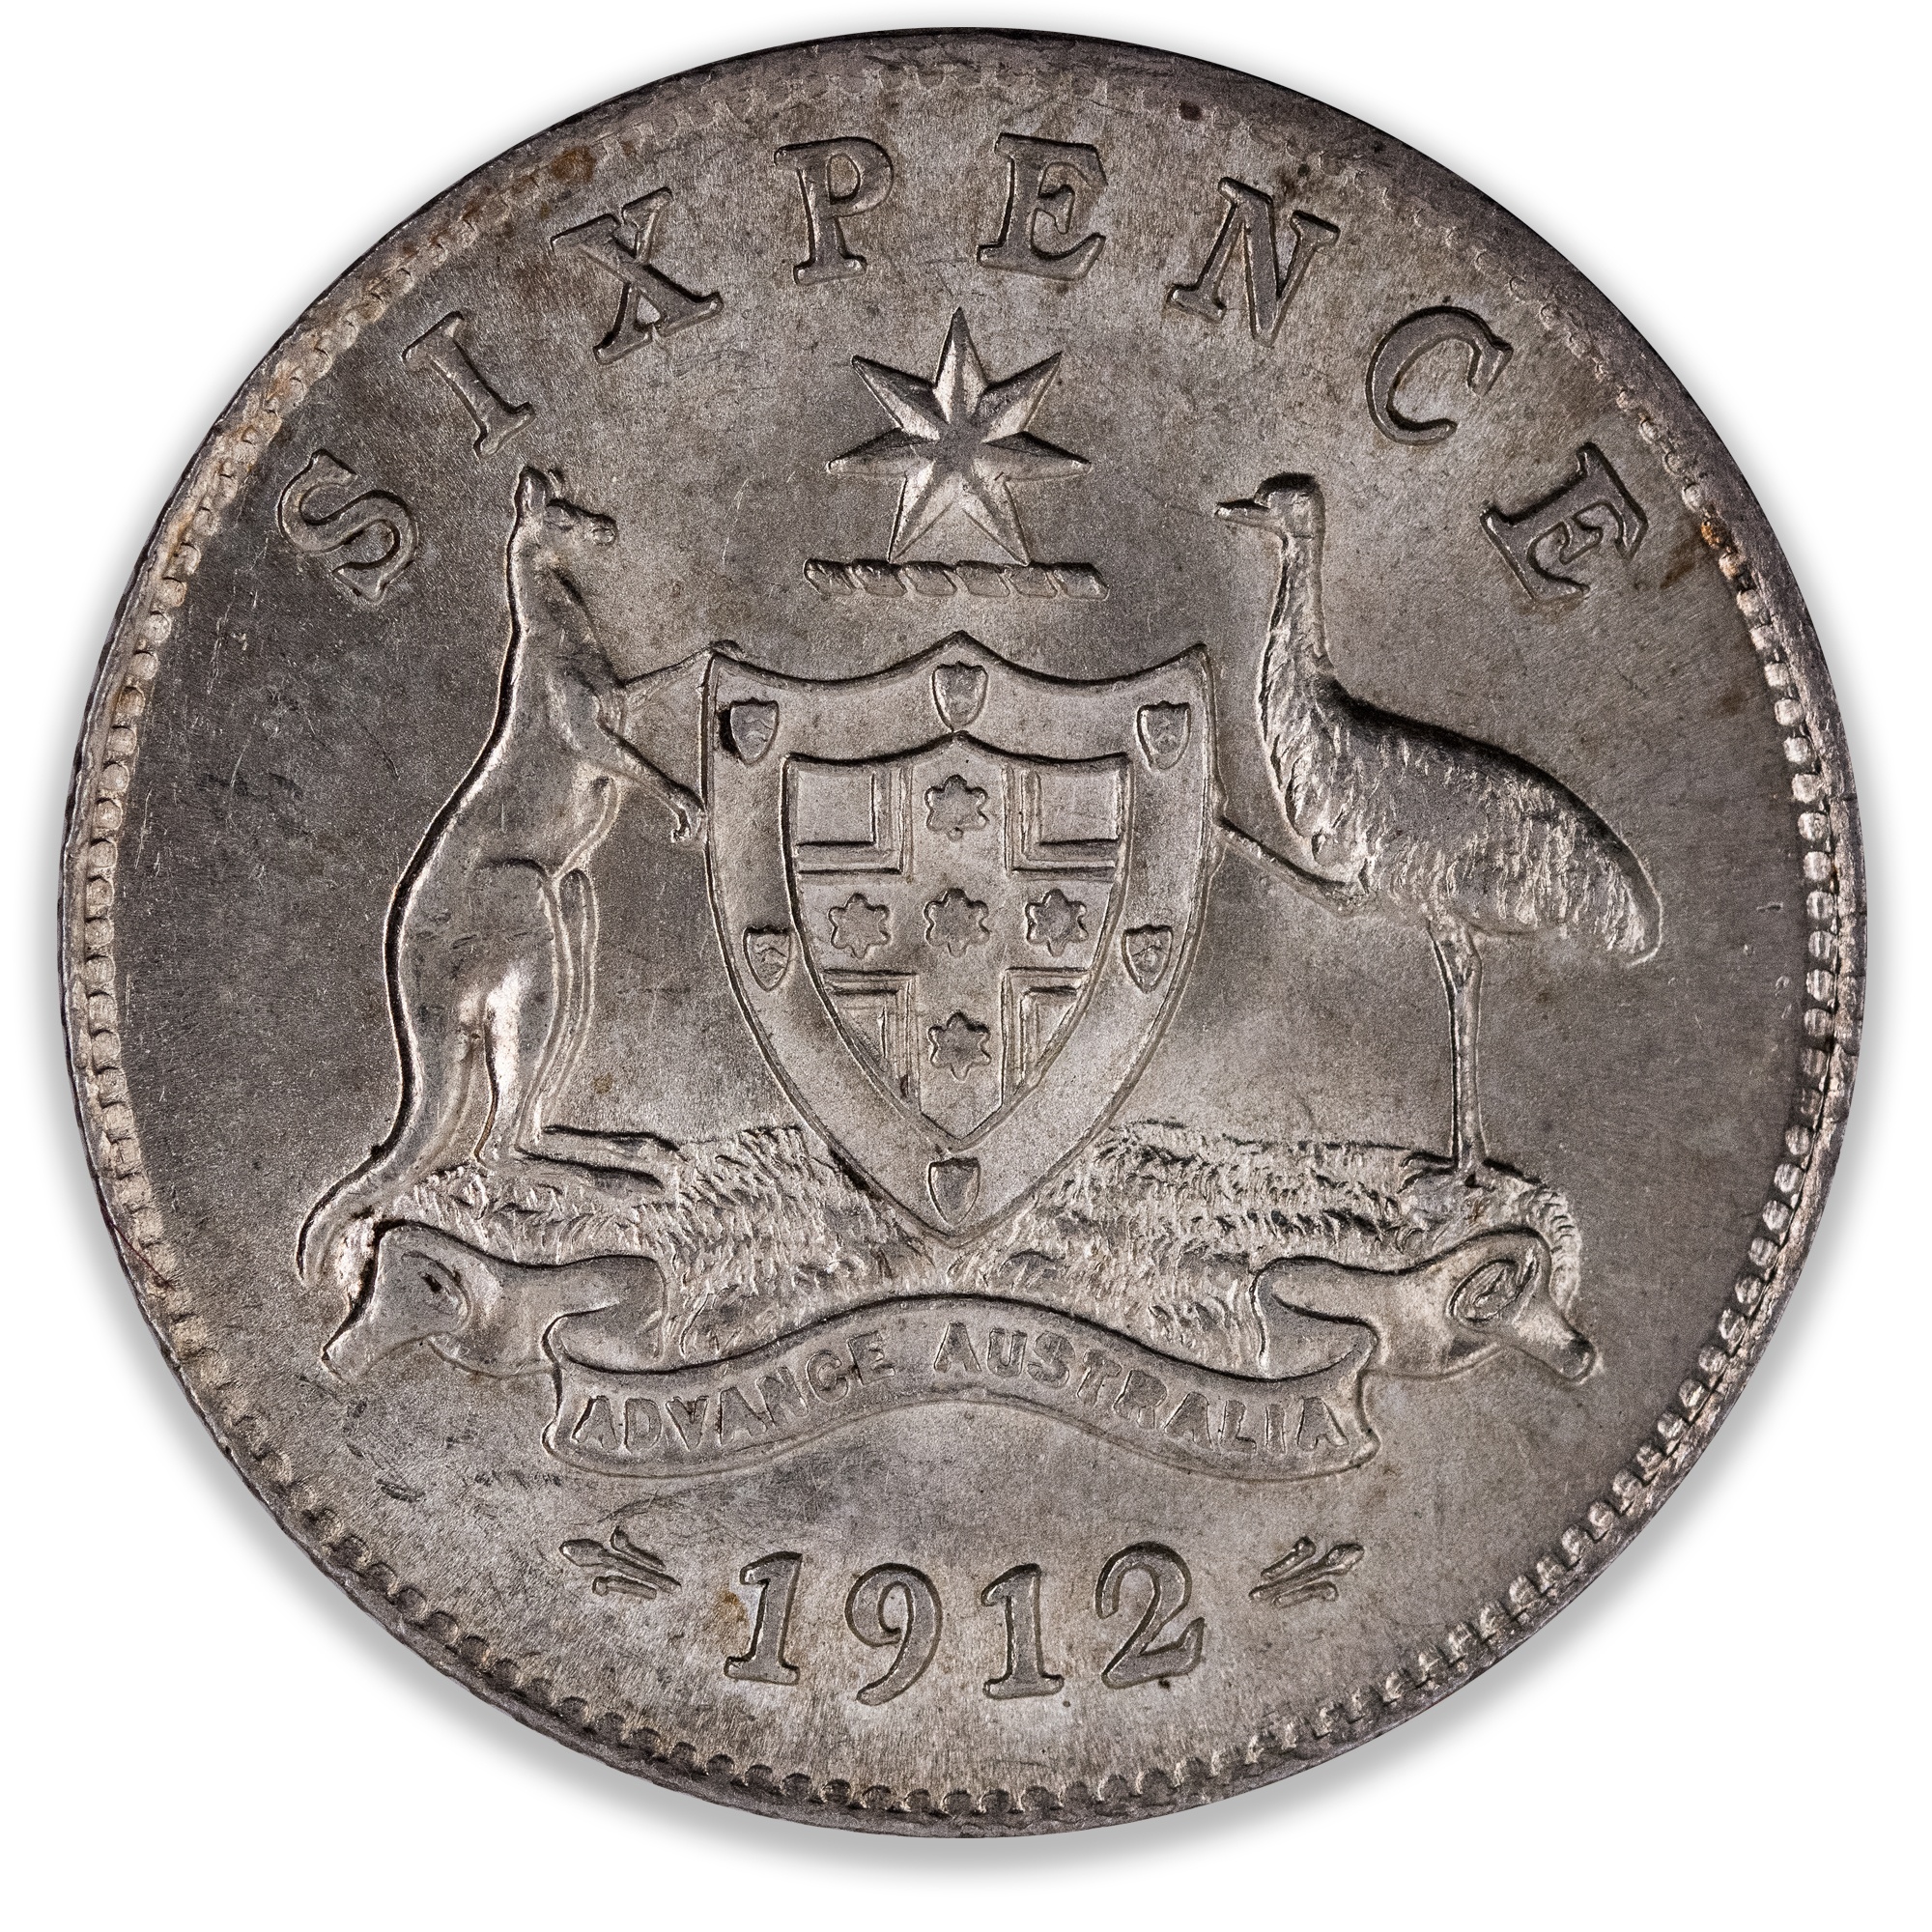 1912 Australian Sixpence Uncirculated